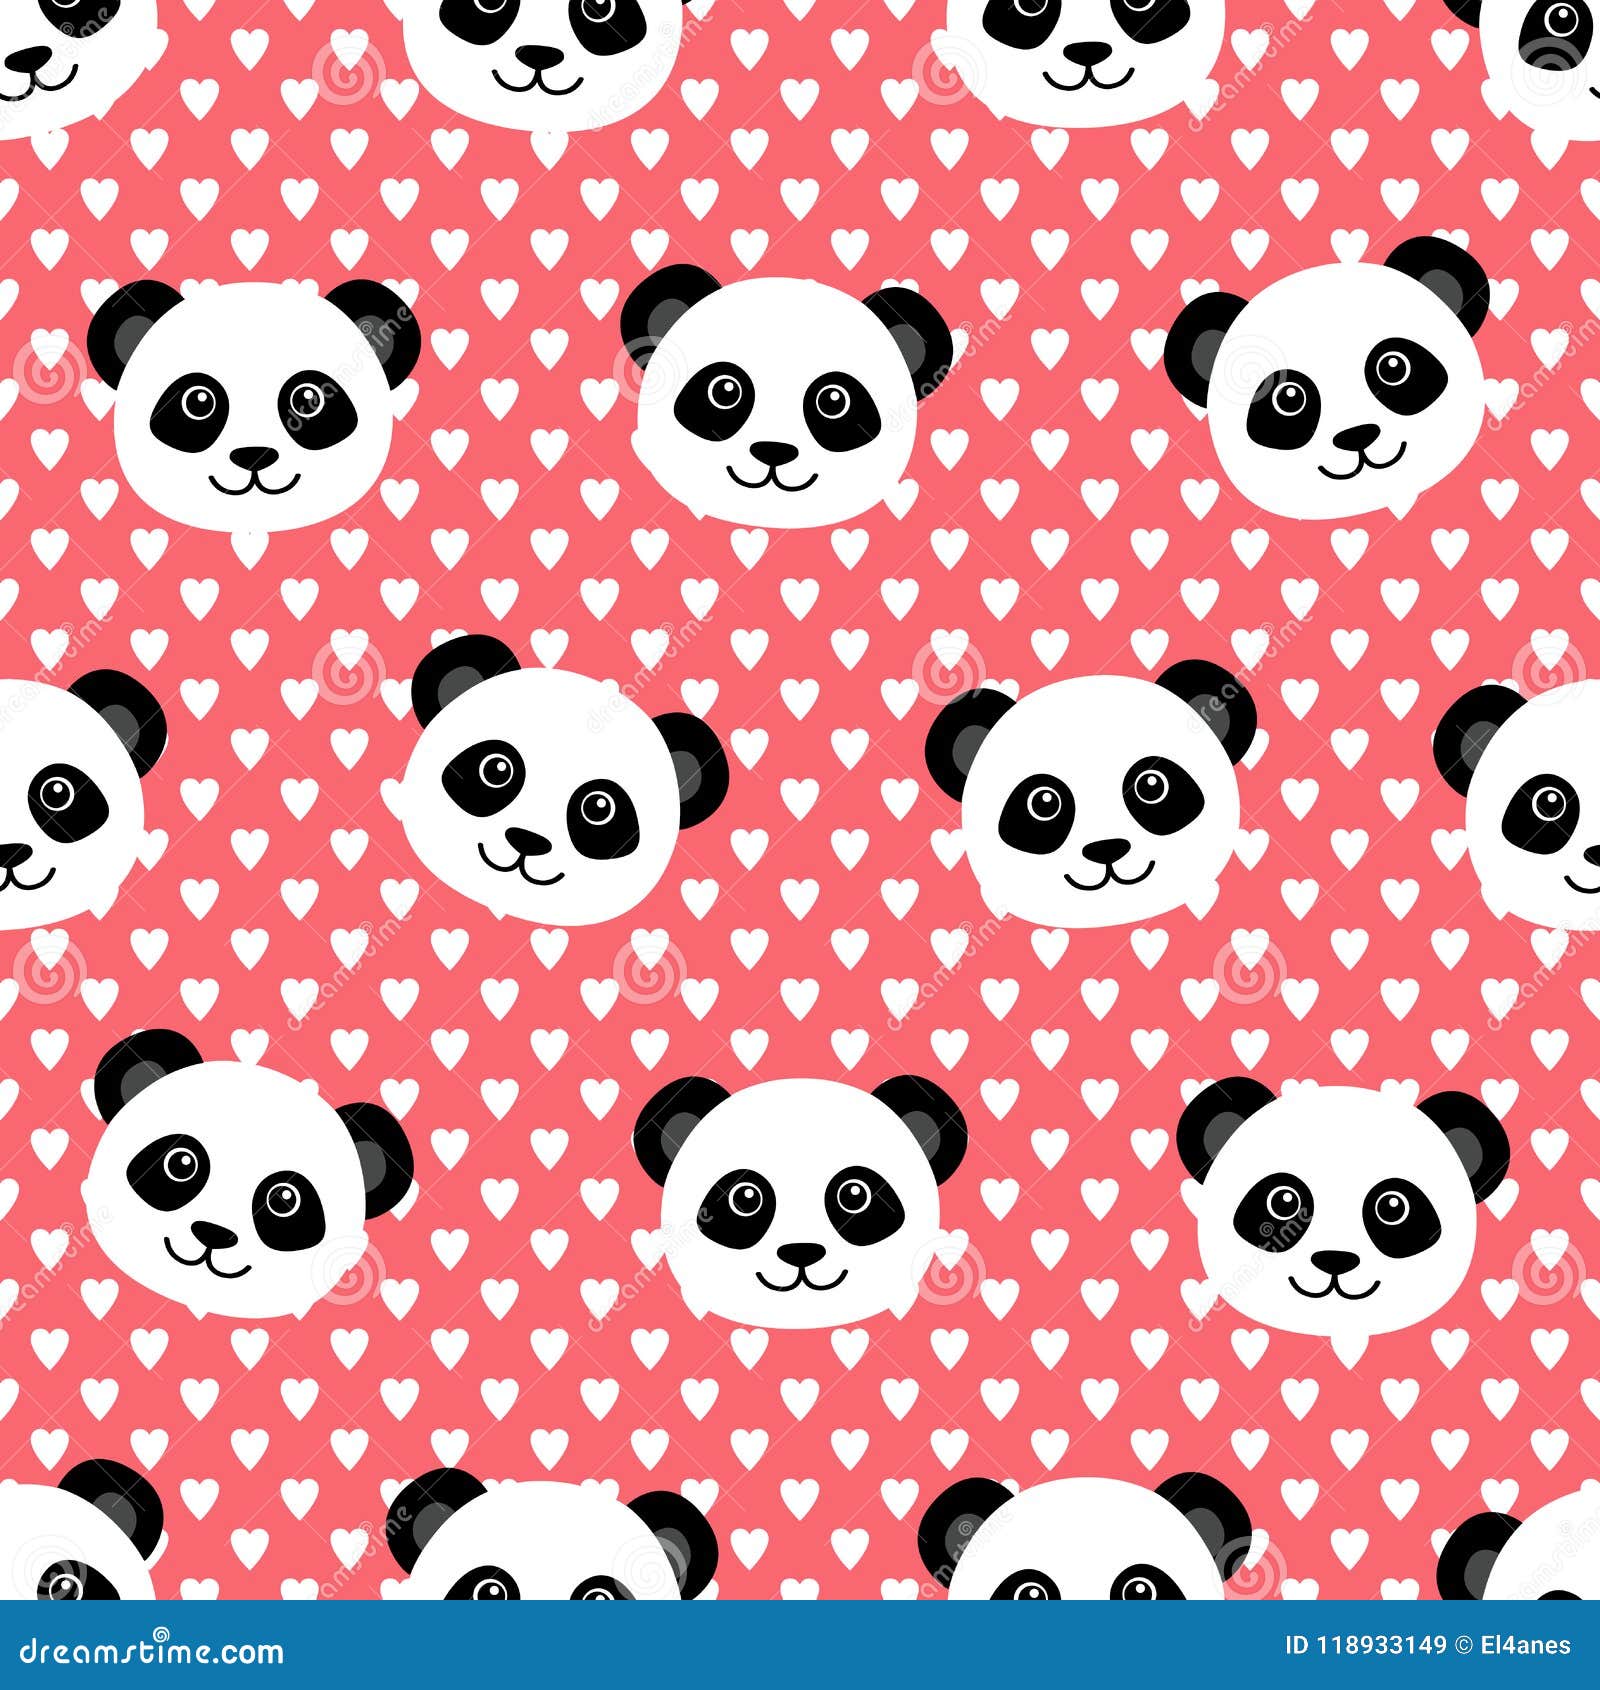 Lovely panda wallpaper stock vector. Illustration of kids - 118933149